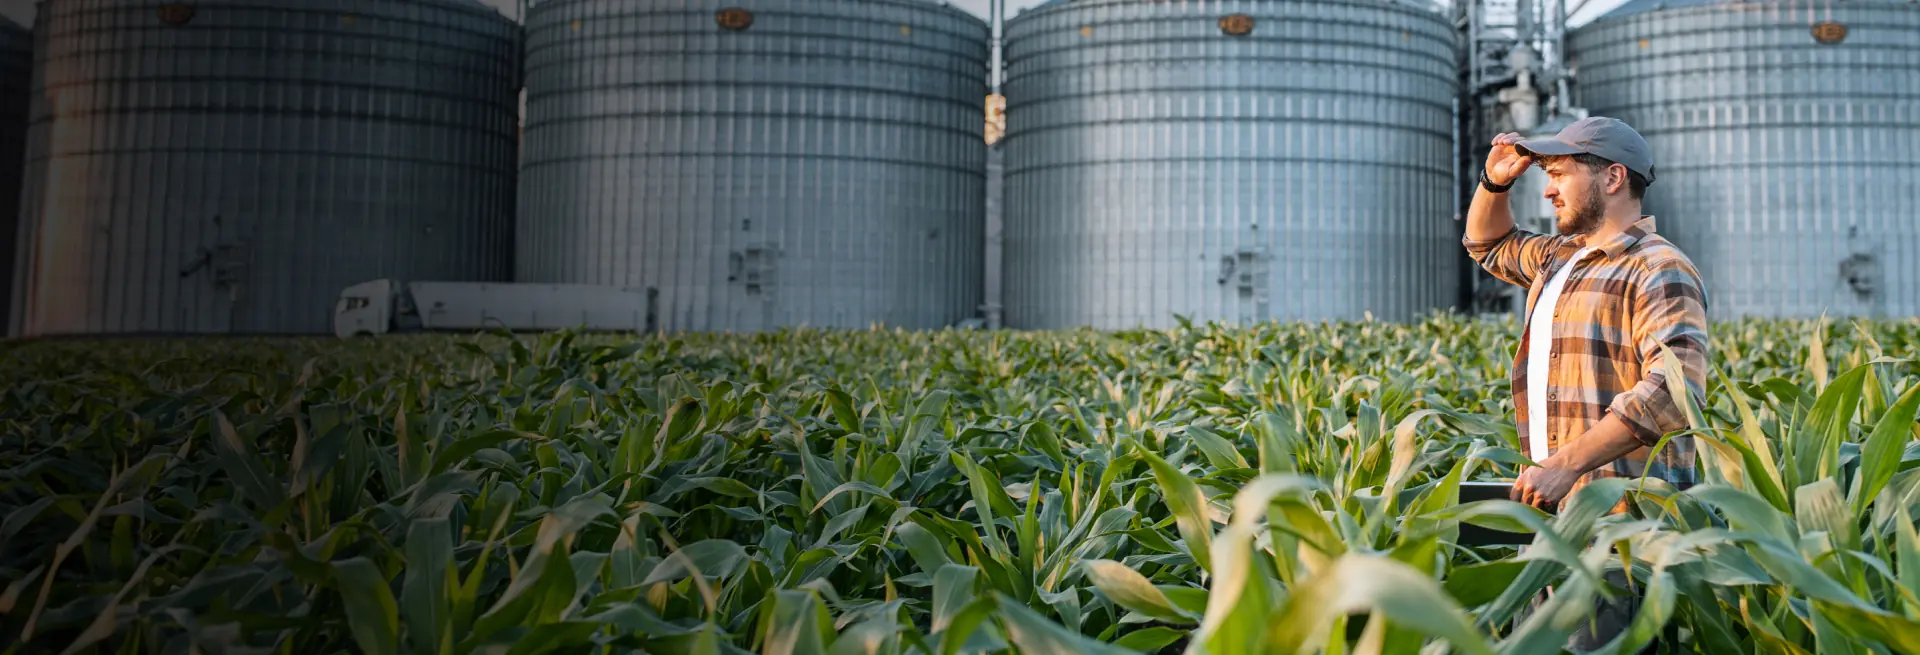 Um homem em pé em um campo de milho com silos ao fundo, analisando seu inventário de colheita